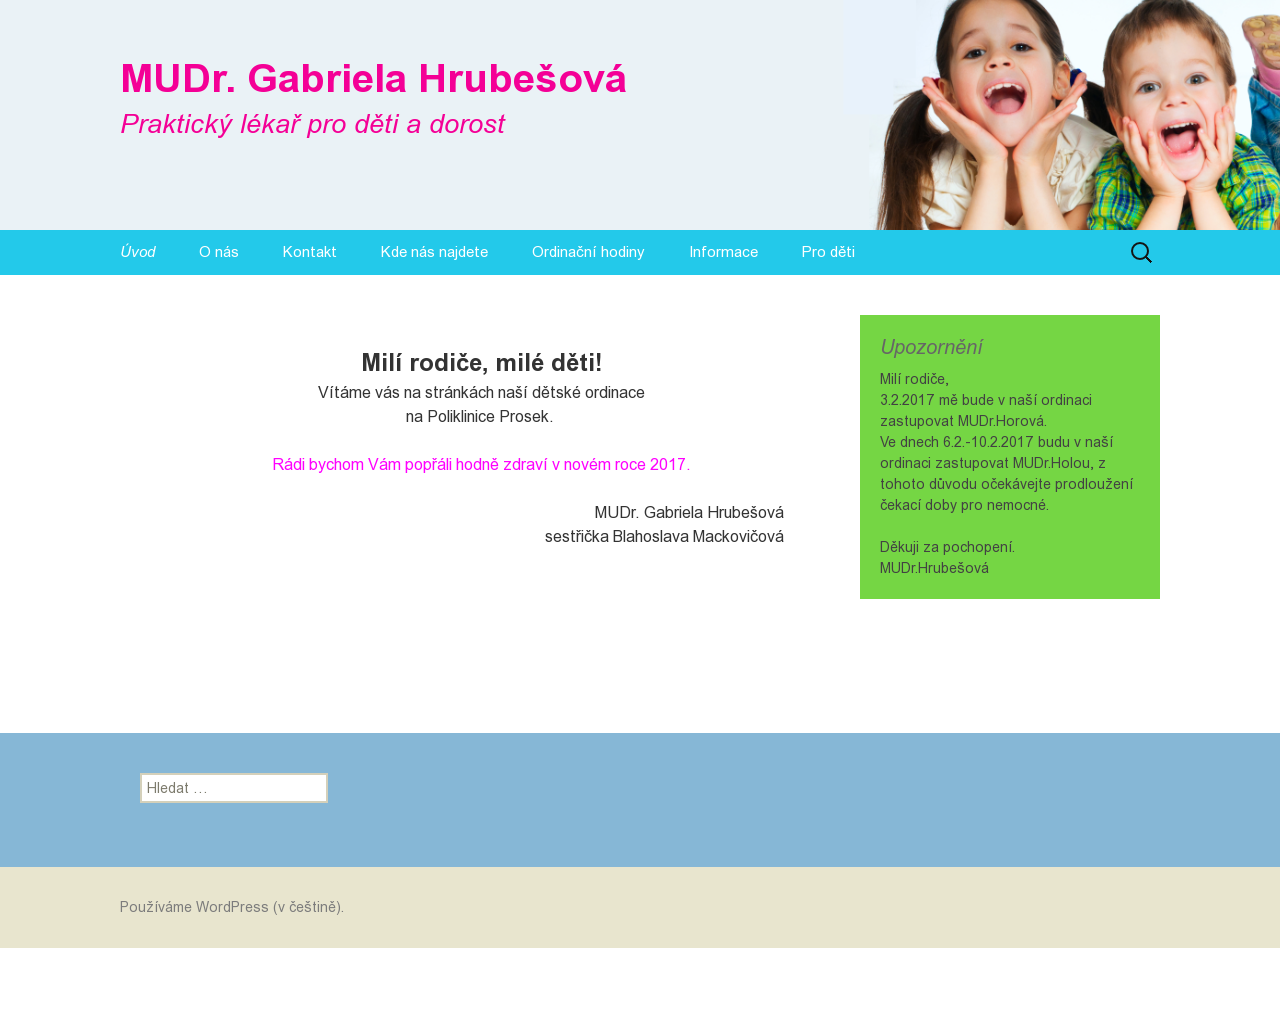 Site Image clinicare.cz v 1280x1024